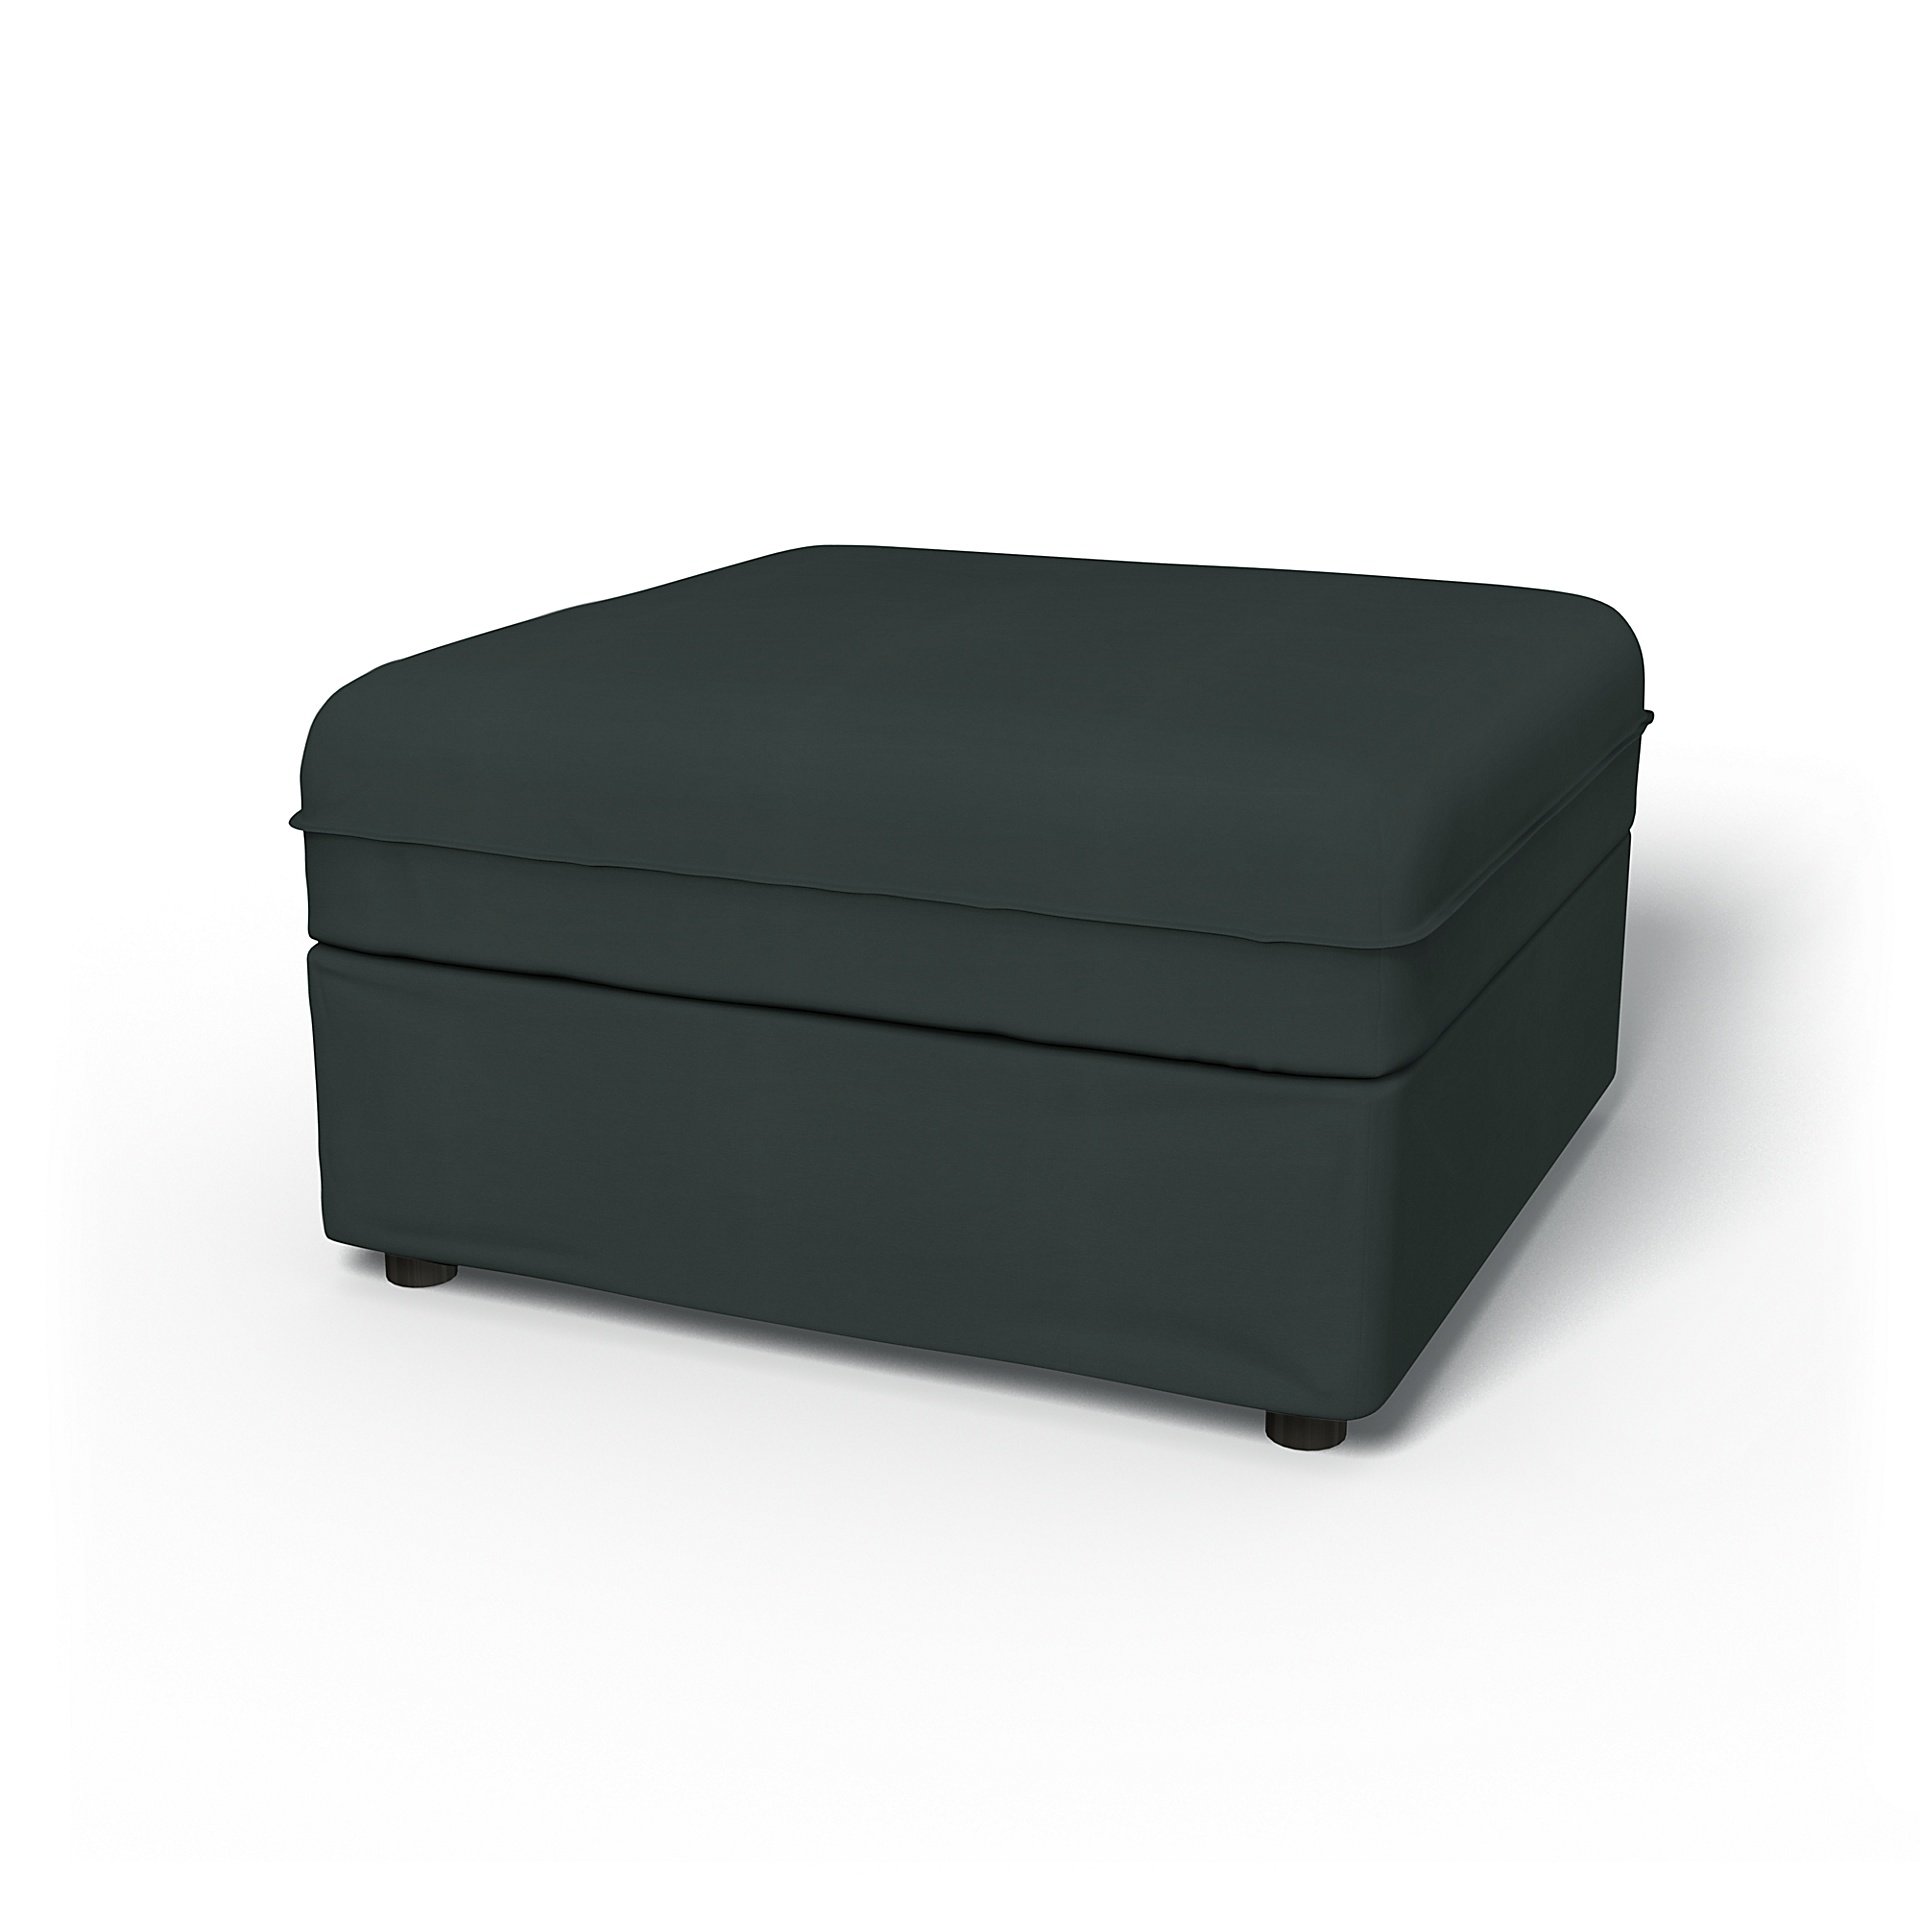 IKEA - Vallentuna Seat Module with Storage Cover 80x80cm 32x32in, Graphite Grey, Cotton - Bemz